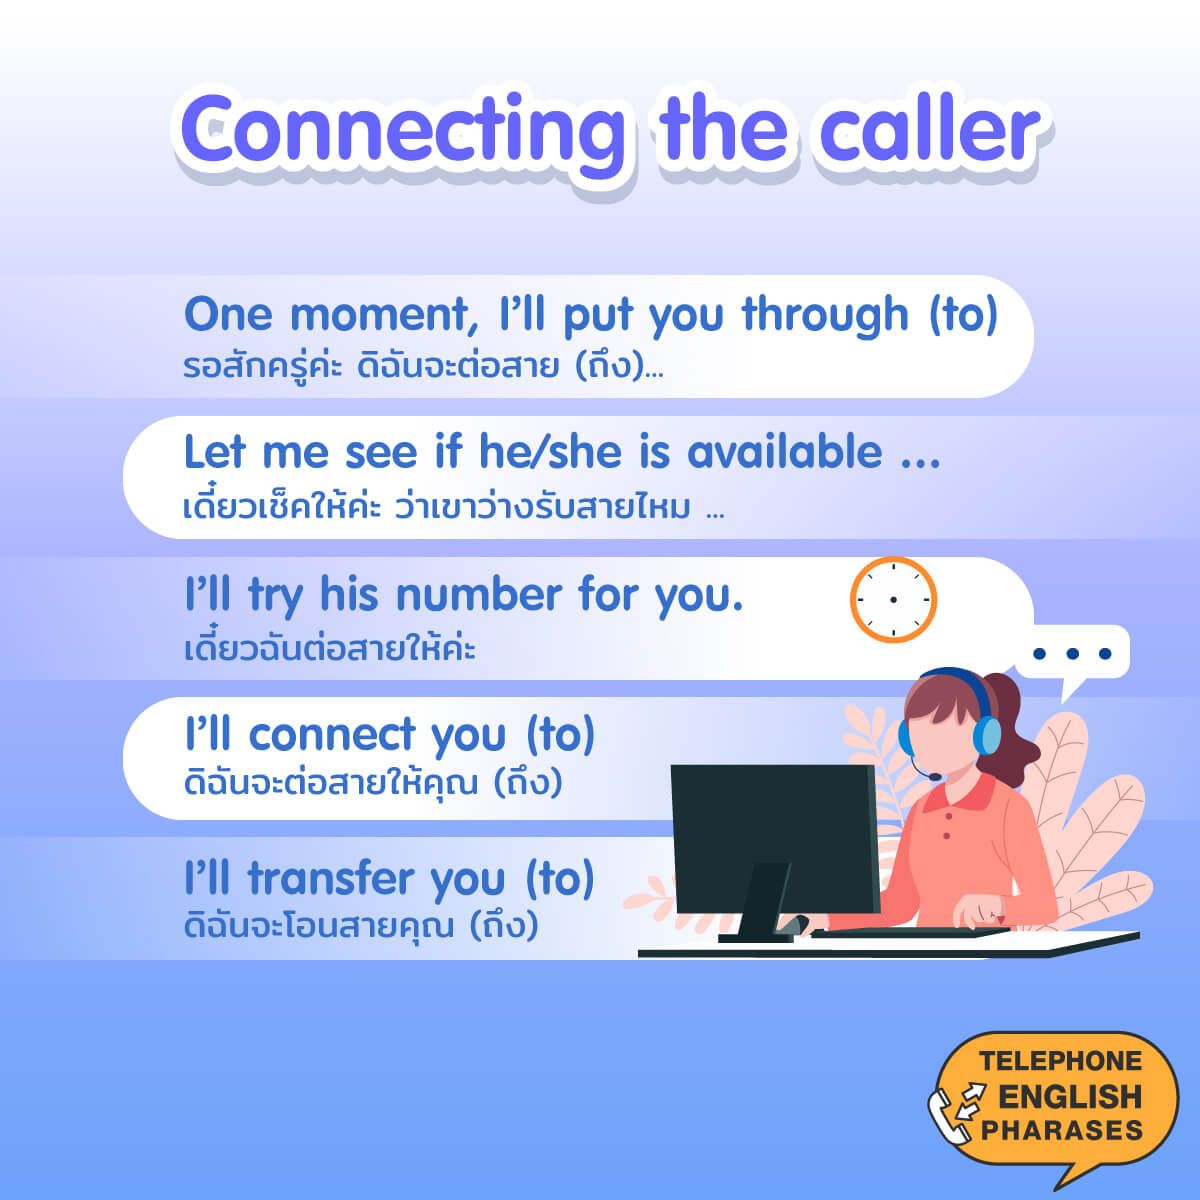 บทสนทนา ภาษา อังกฤษ ทาง โทรศัพท์ ต่อสาย โอนสาย รอสักครู่ English for Telephoning  - Connecting the caller 